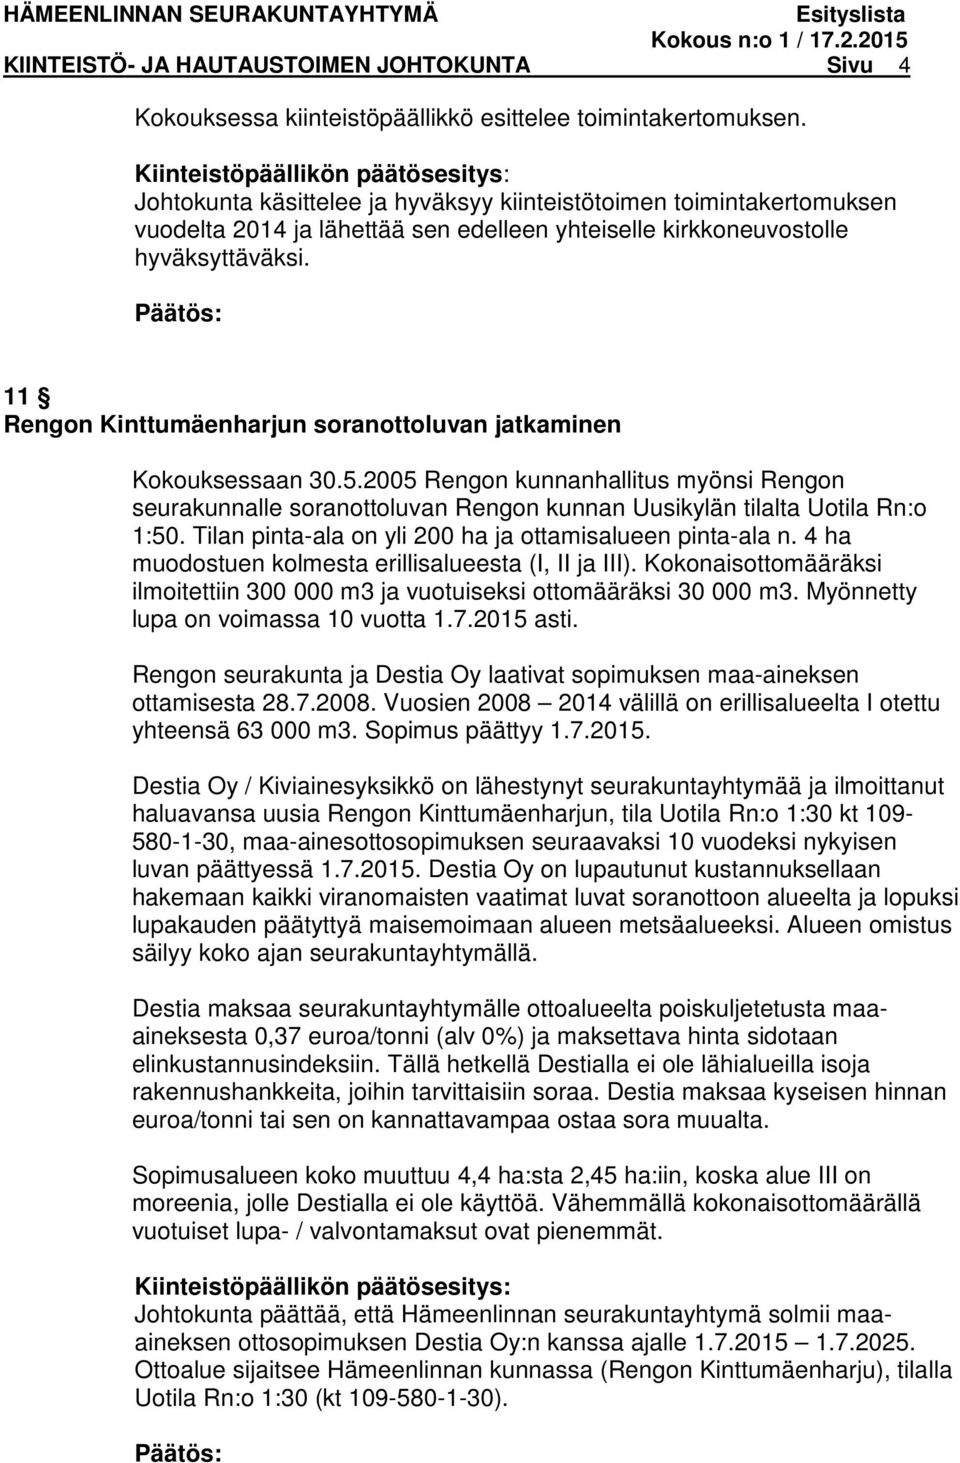 2005 Rengon kunnanhallitus myönsi Rengon seurakunnalle soranottoluvan Rengon kunnan Uusikylän tilalta Uotila Rn:o 1:50. Tilan pinta-ala on yli 200 ha ja ottamisalueen pinta-ala n.